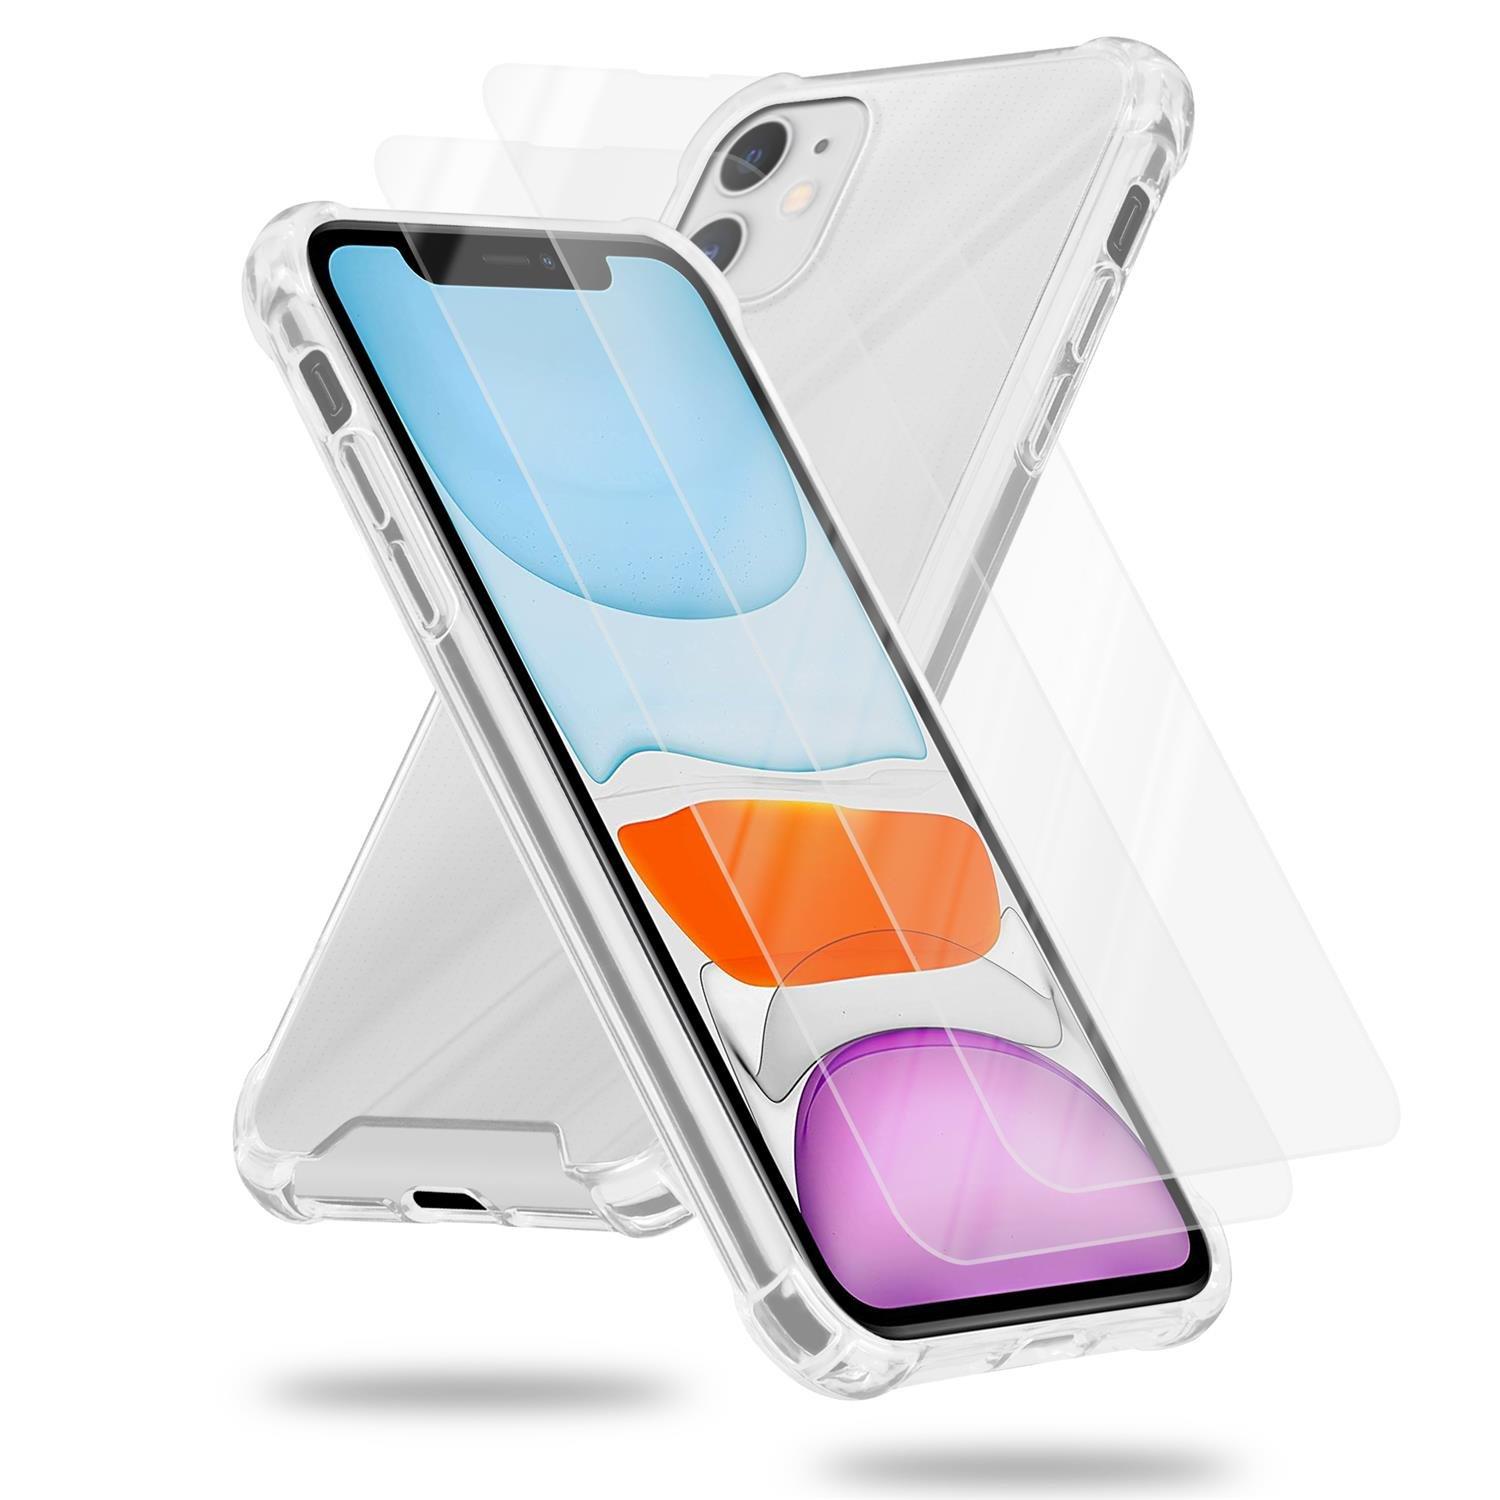 Cadorabo  Housse et 2x verres de protection trempés compatibles avec Apple iPhone 11 - Coque de protection hybride avec bord en silicone TPU et dos en verre acrylique 